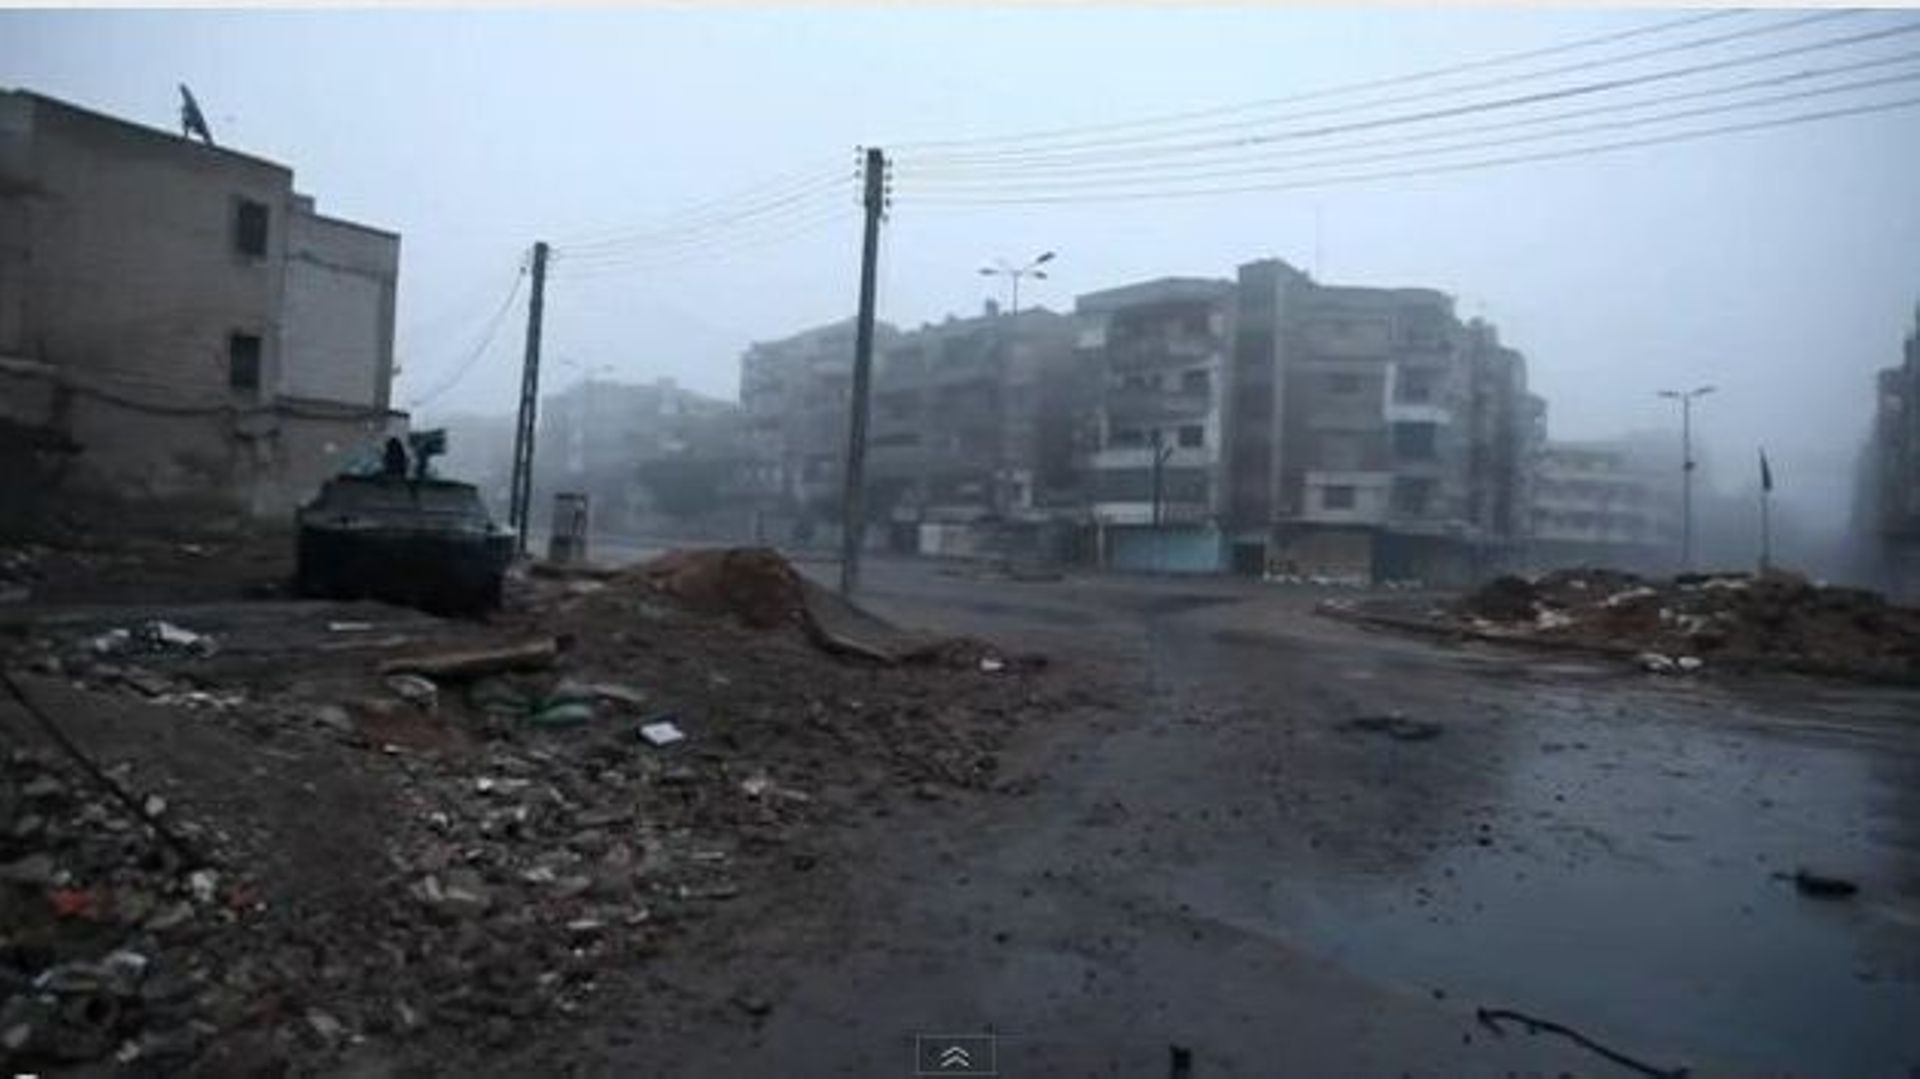 Syrie, un Belge témoigne: "Ce que j'ai vu, c'est l'enfer sur Terre" - On voit ici un quartier de Homs après un bombardement de l'armée